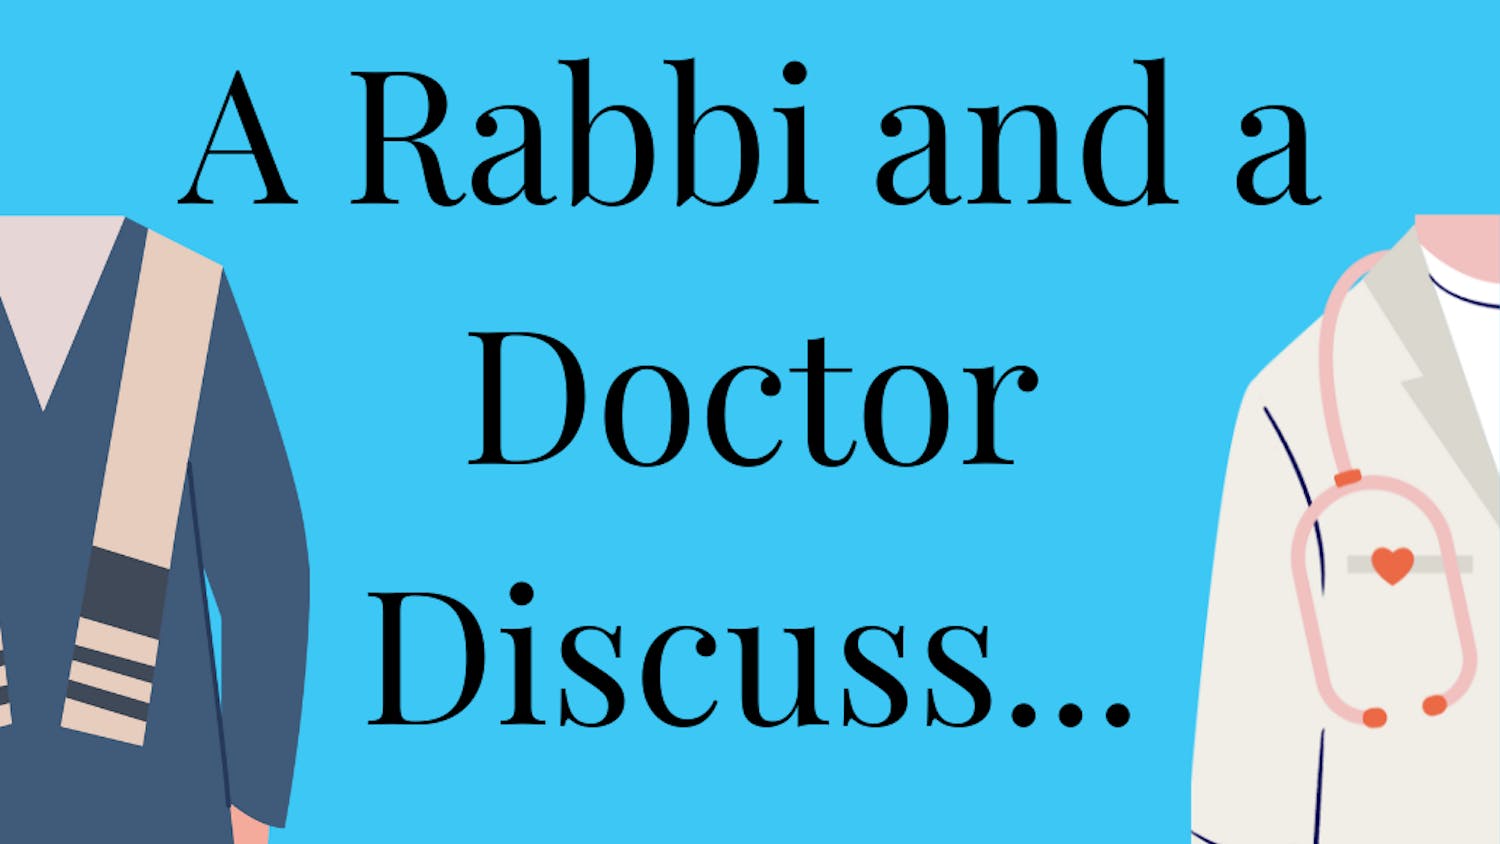 Rabbi and Doctor